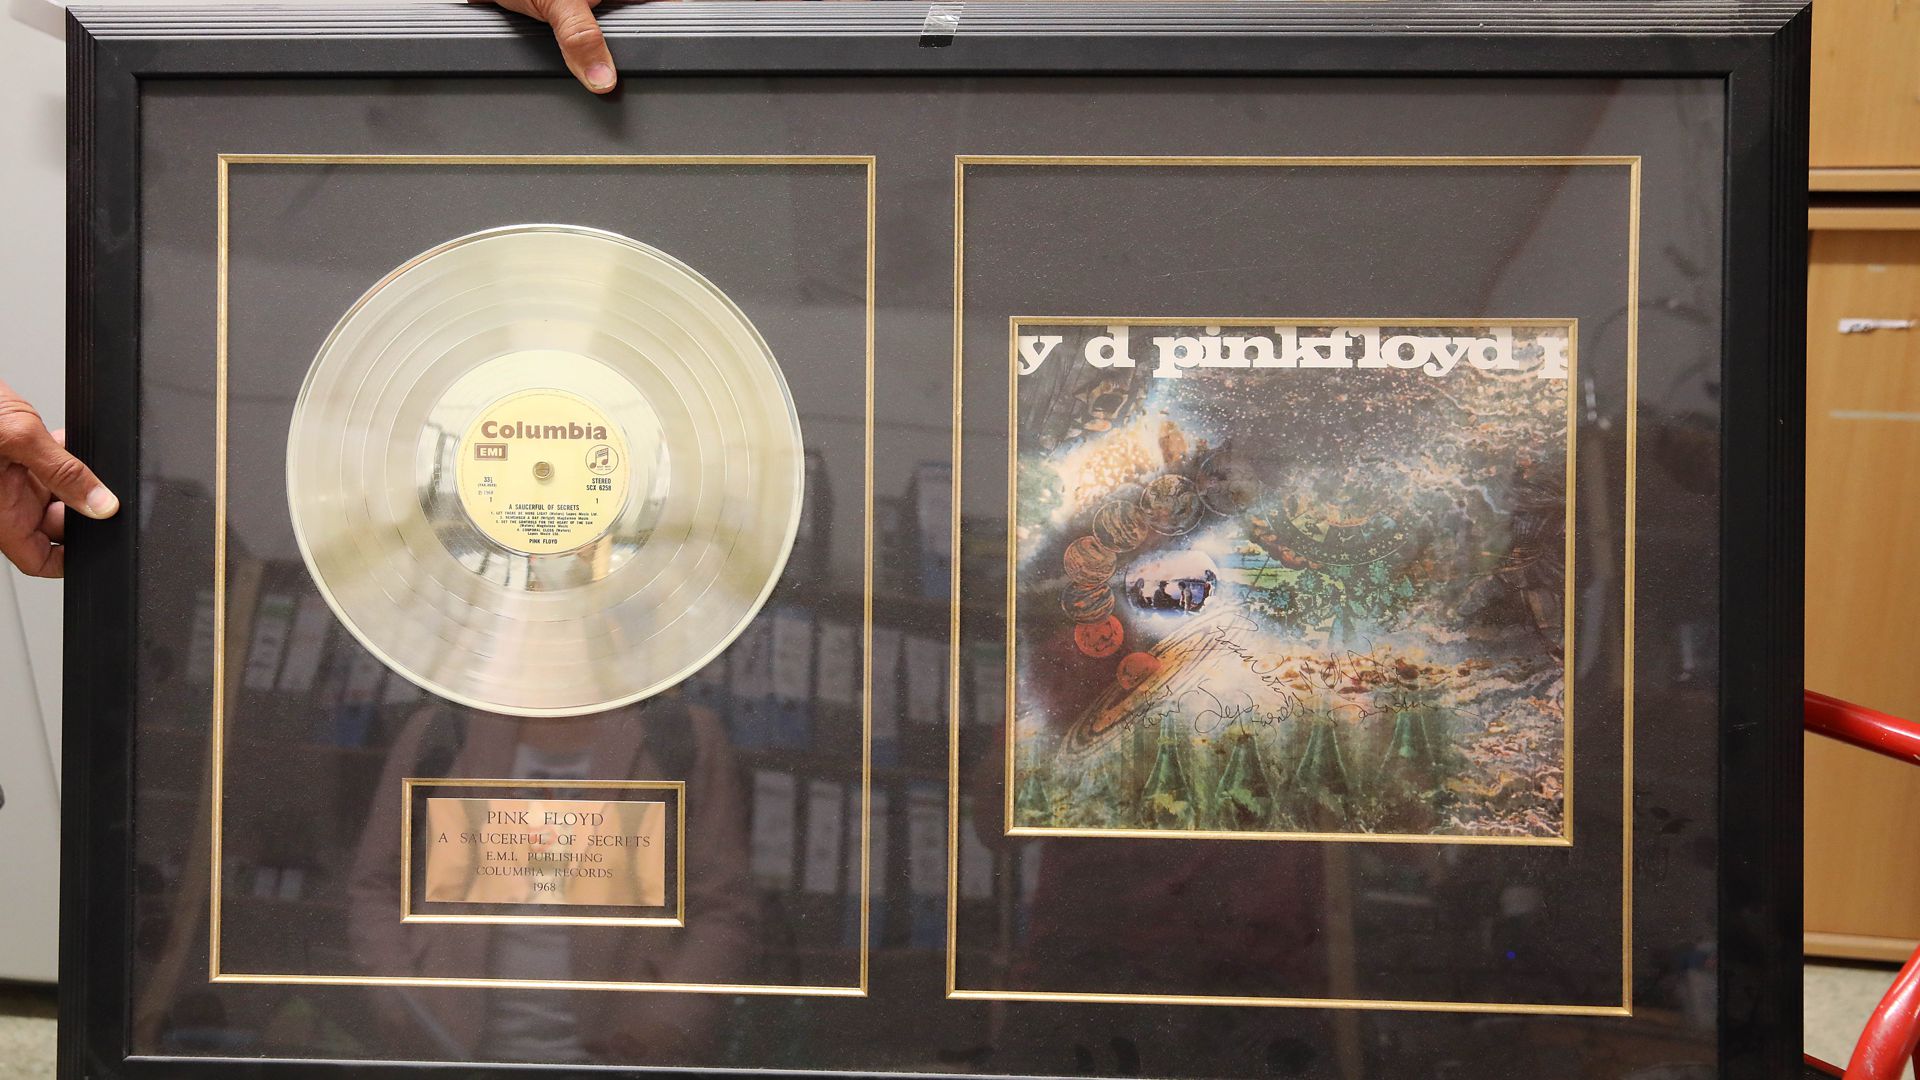 Ein besonderer Schatz: Diese Goldene Schallplatte der Rockband Pink Floyd holte der Besitzer nie ab. Nun gehört sie dem Pfandleiher Heinz Schmalzried.